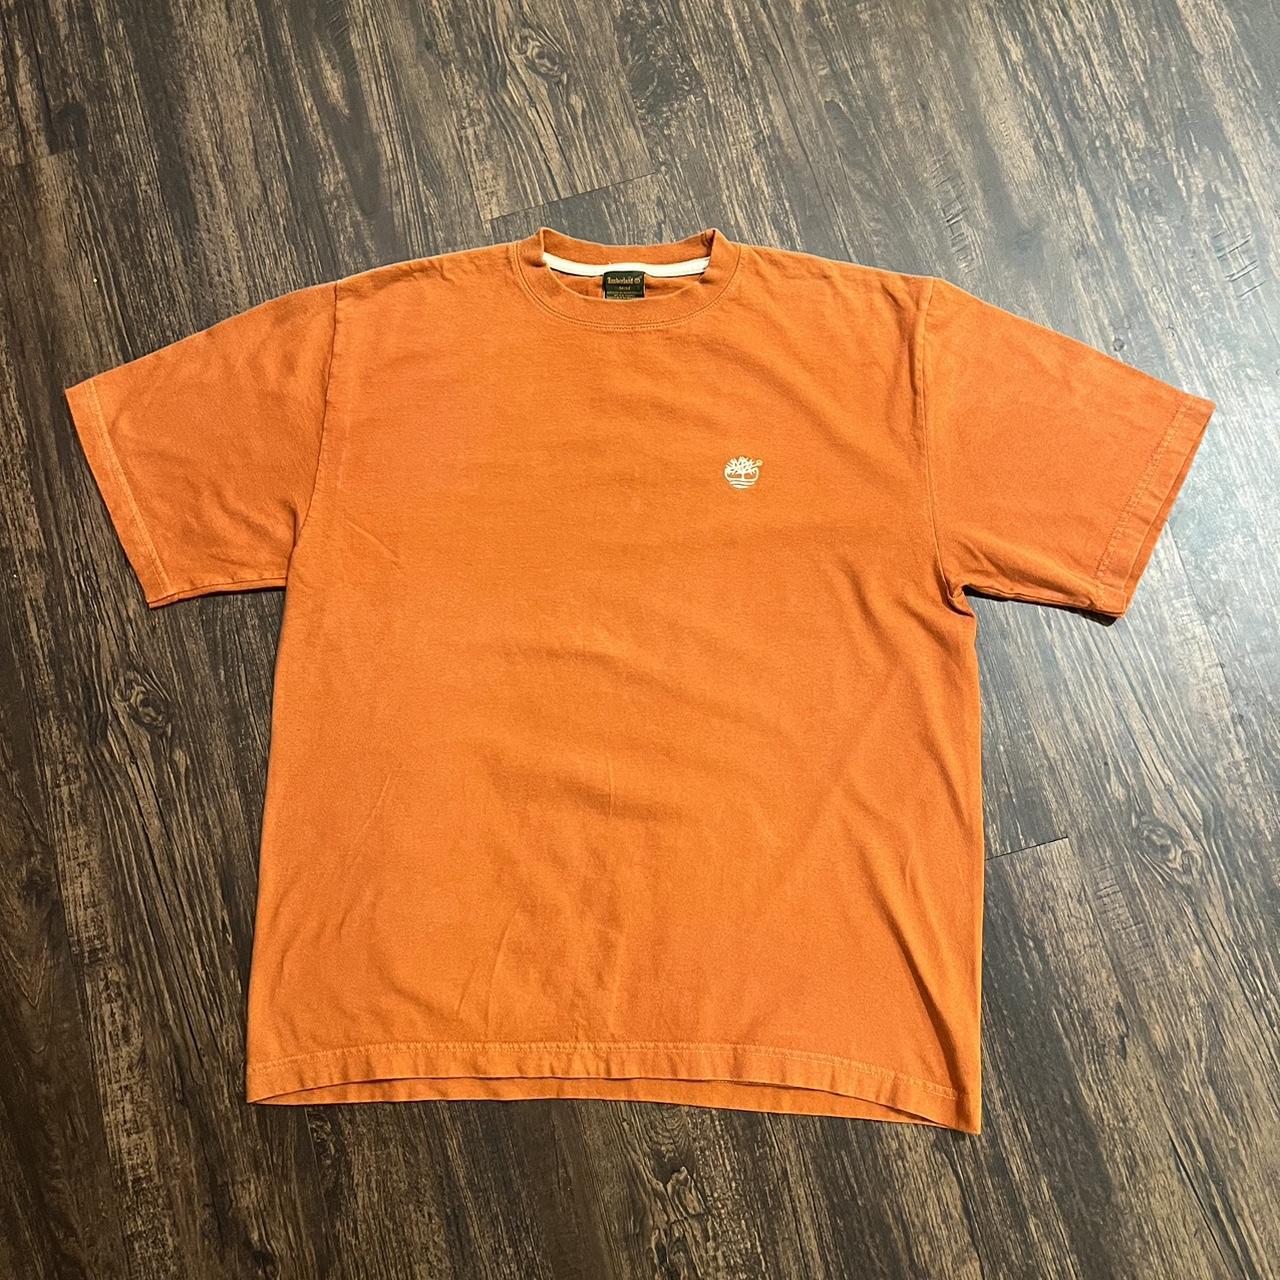 Timberland Men's Orange T-shirt | Depop